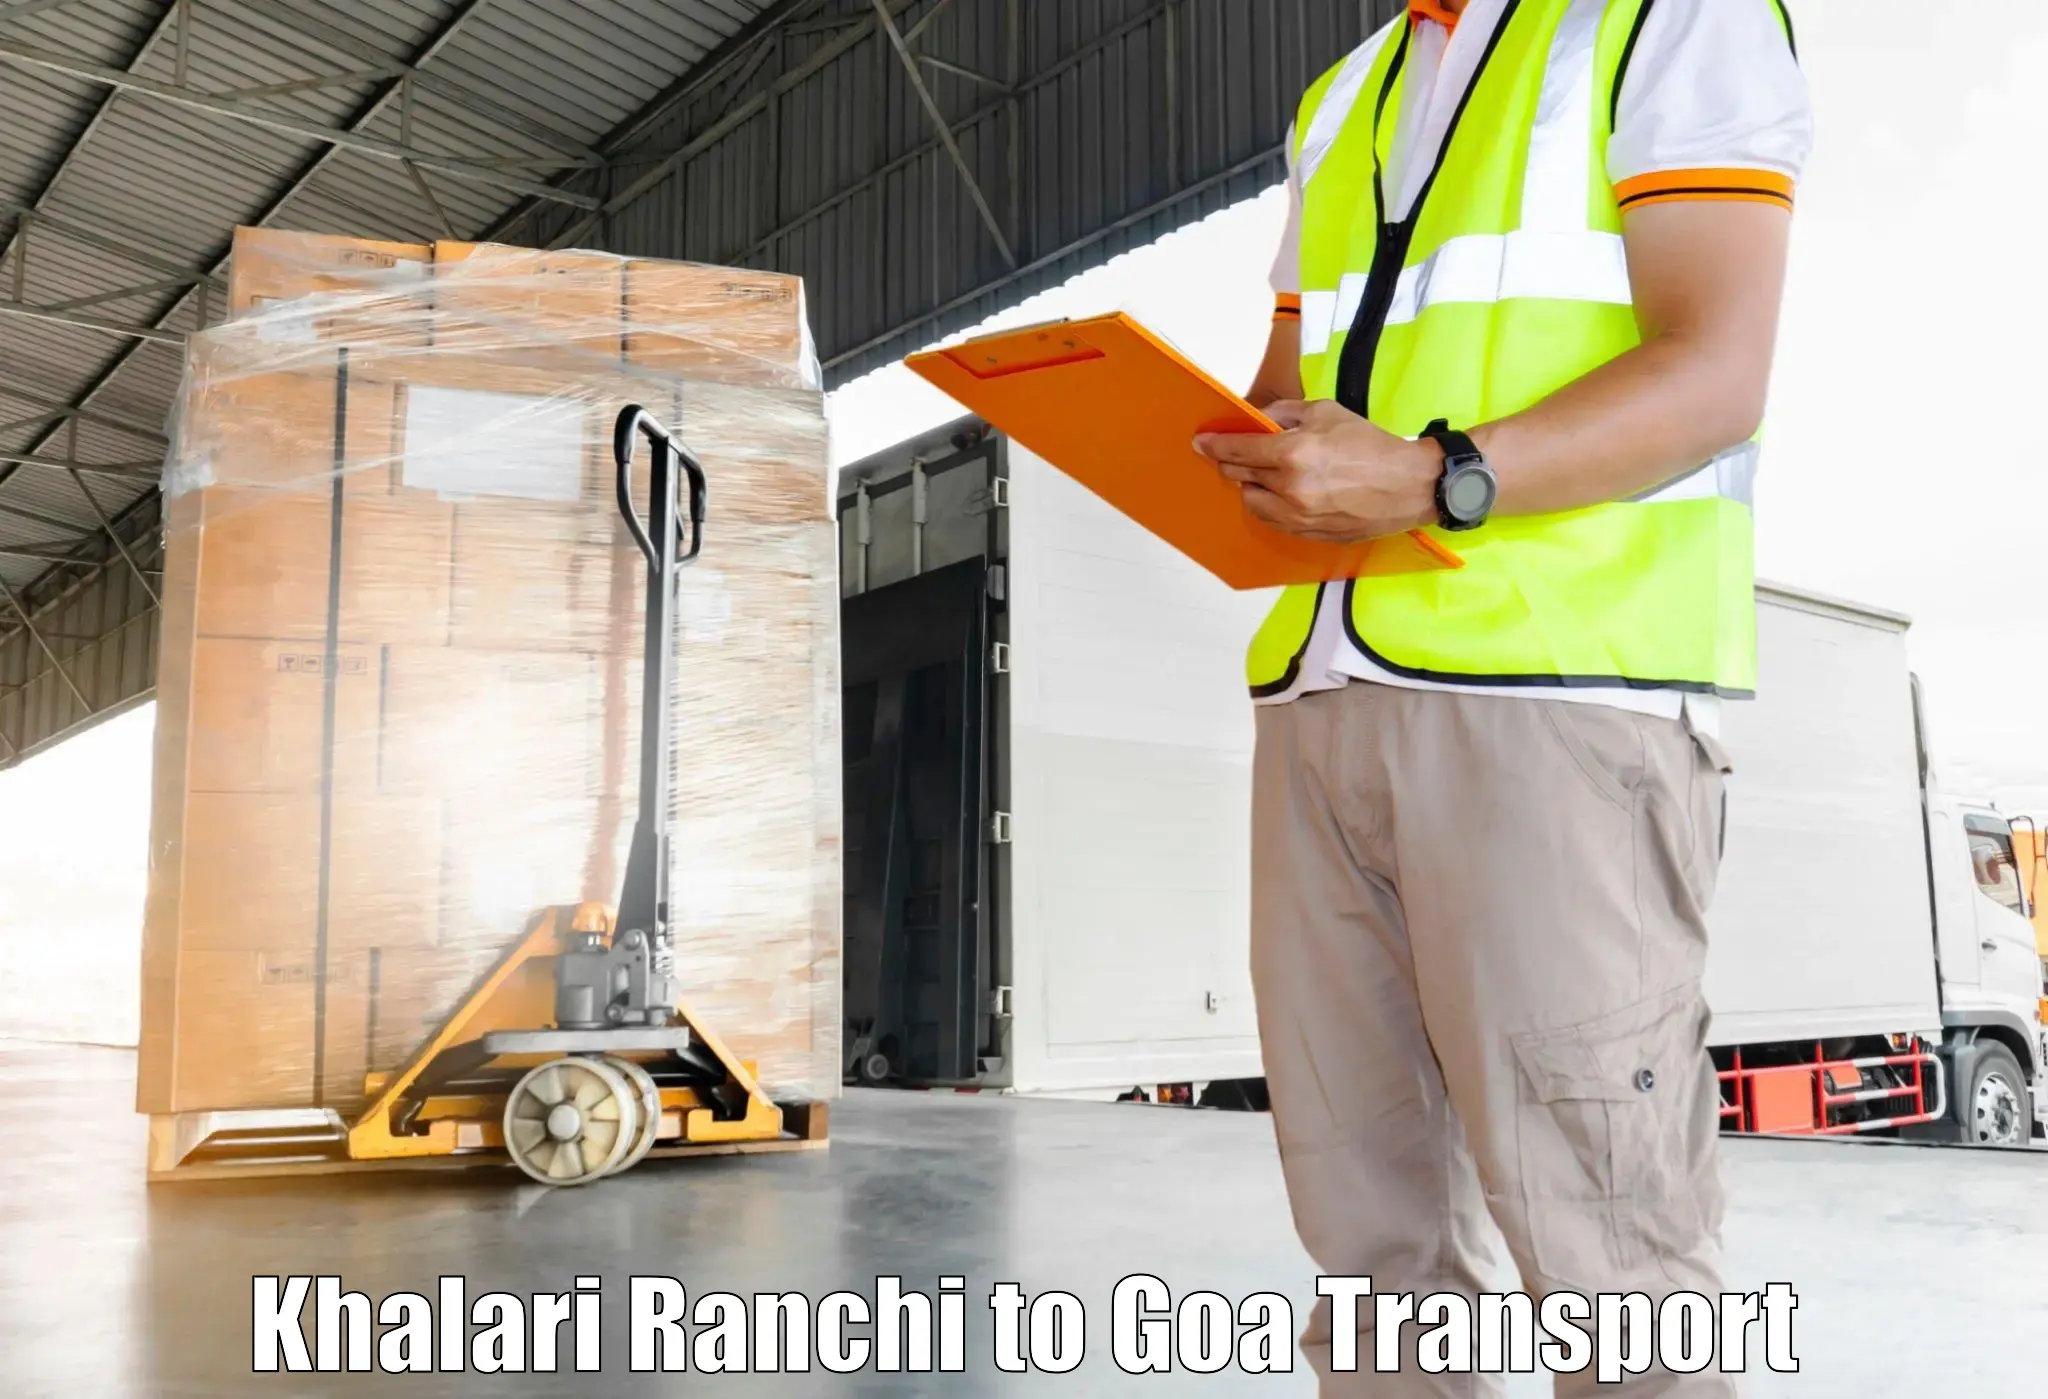 Interstate goods transport Khalari Ranchi to Panjim